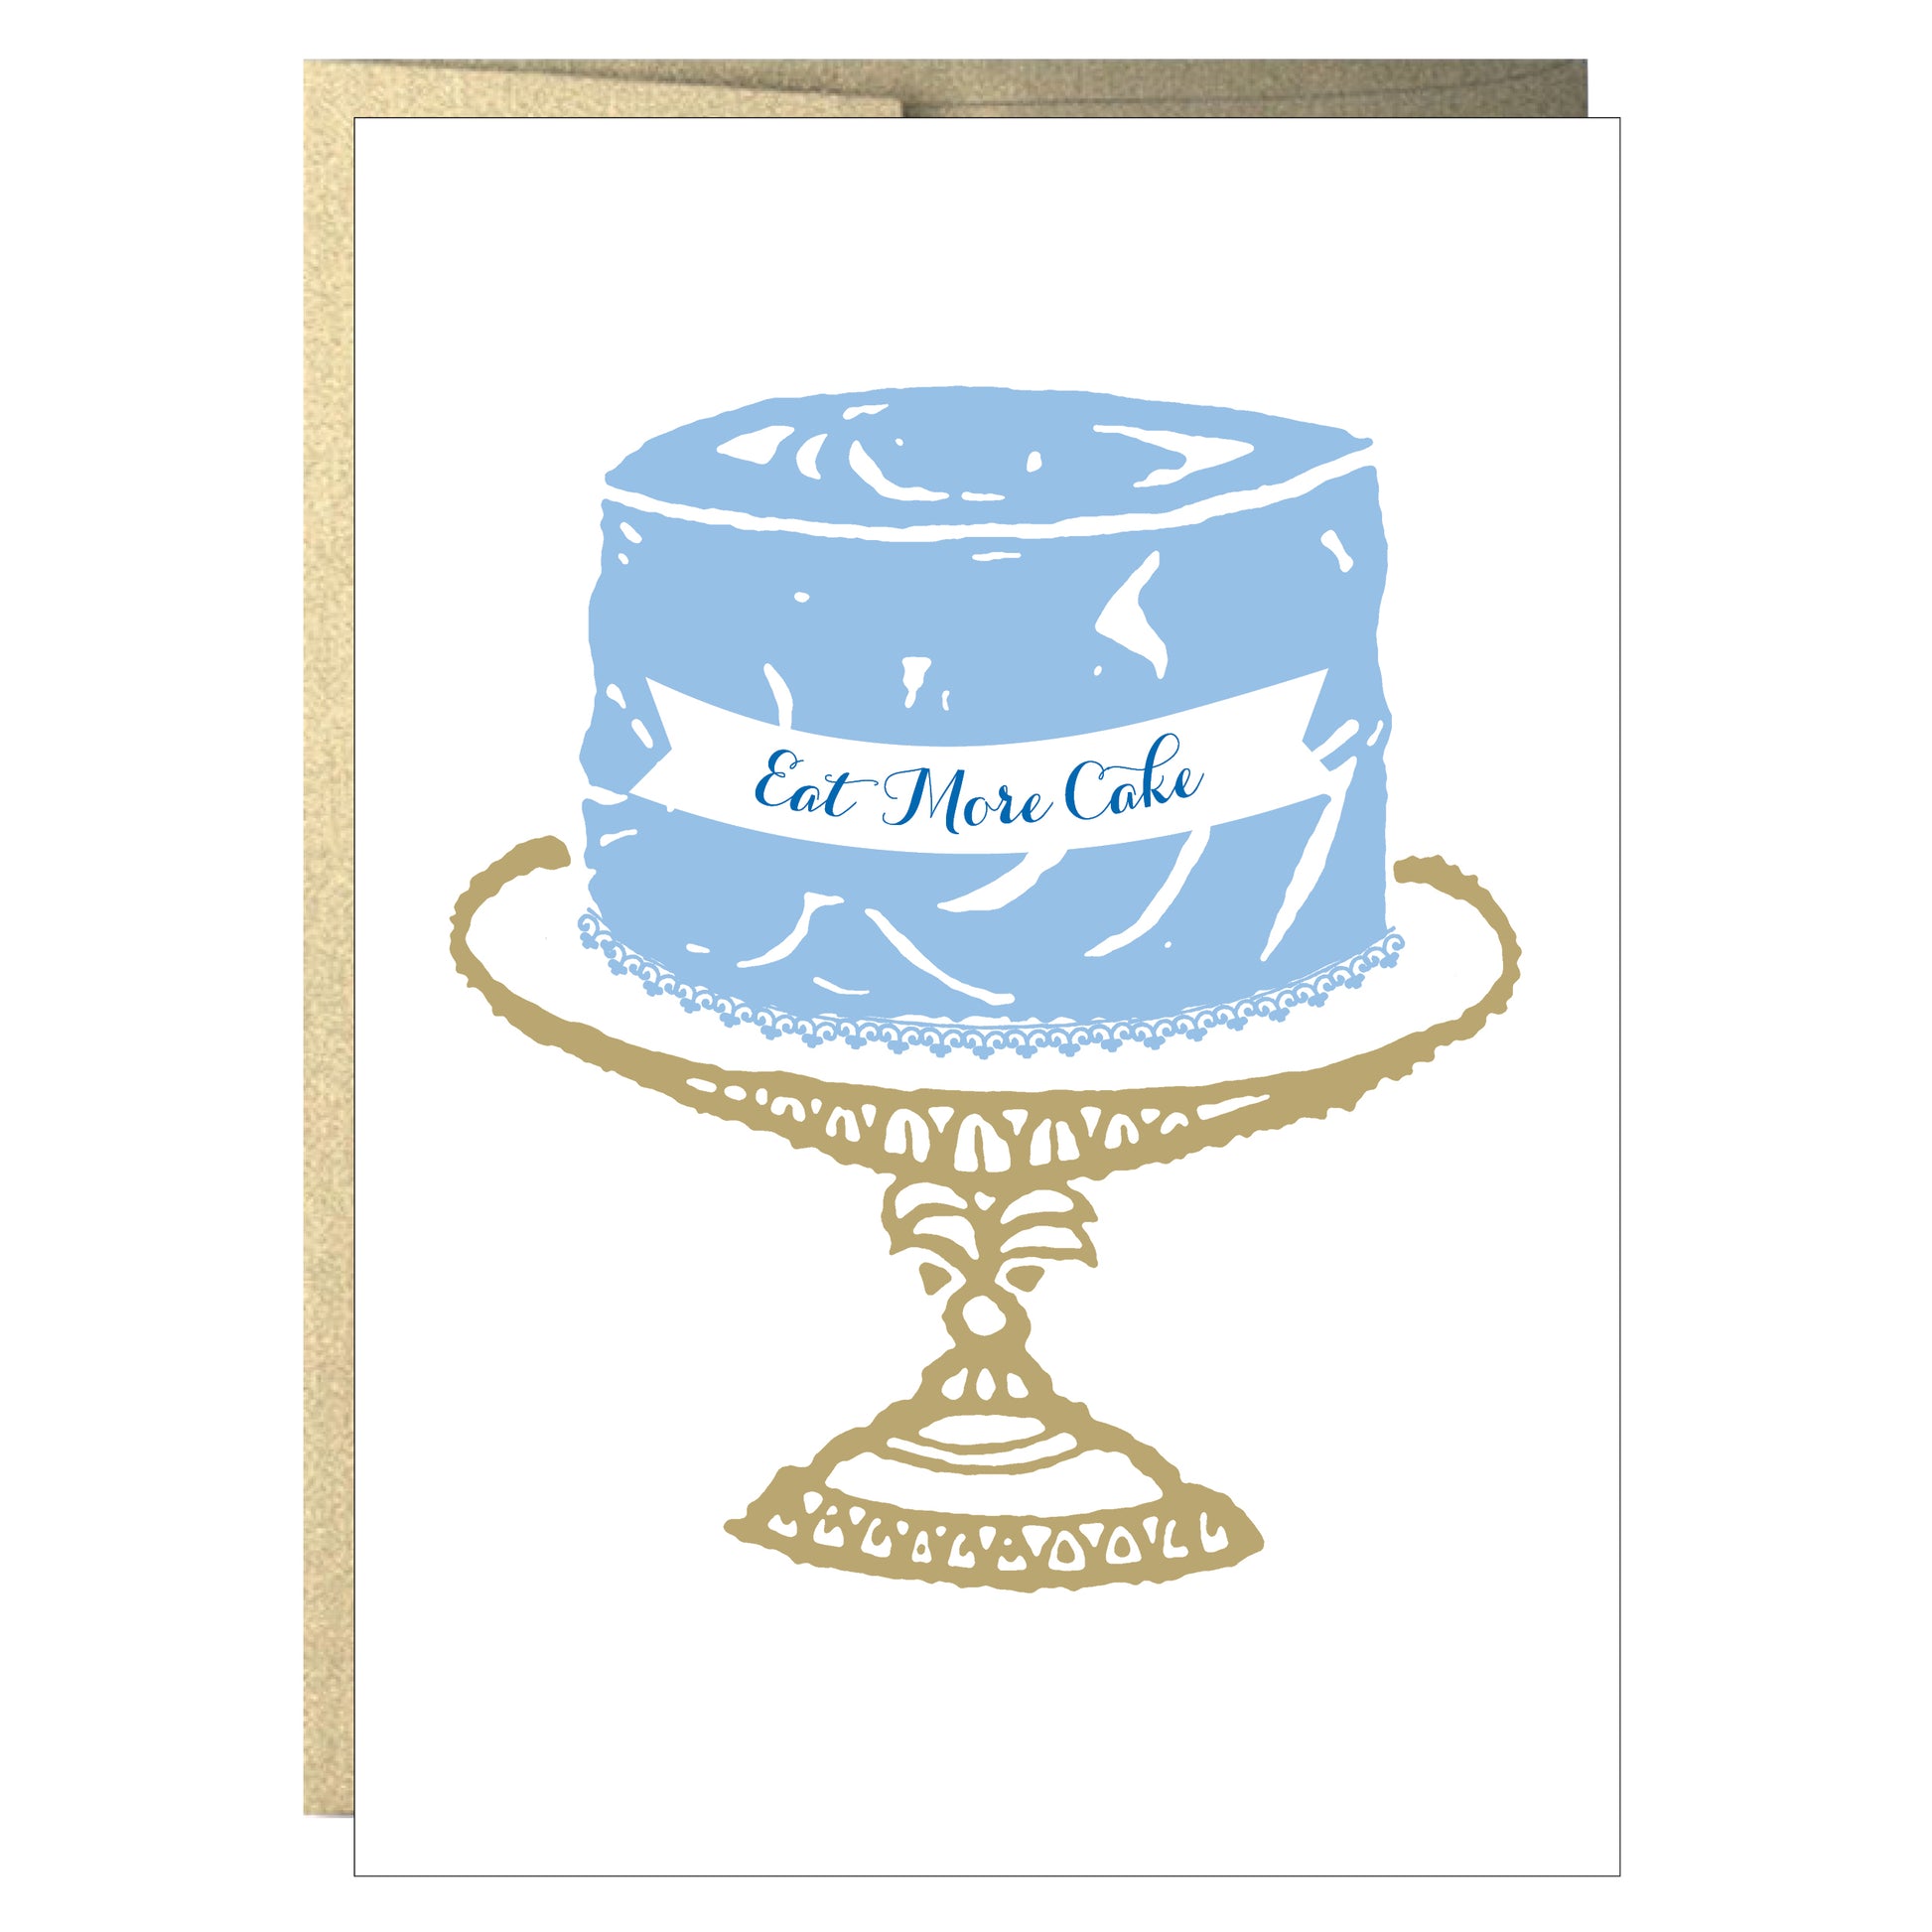 Eat More Cake Greeting Card - Idea Chíc